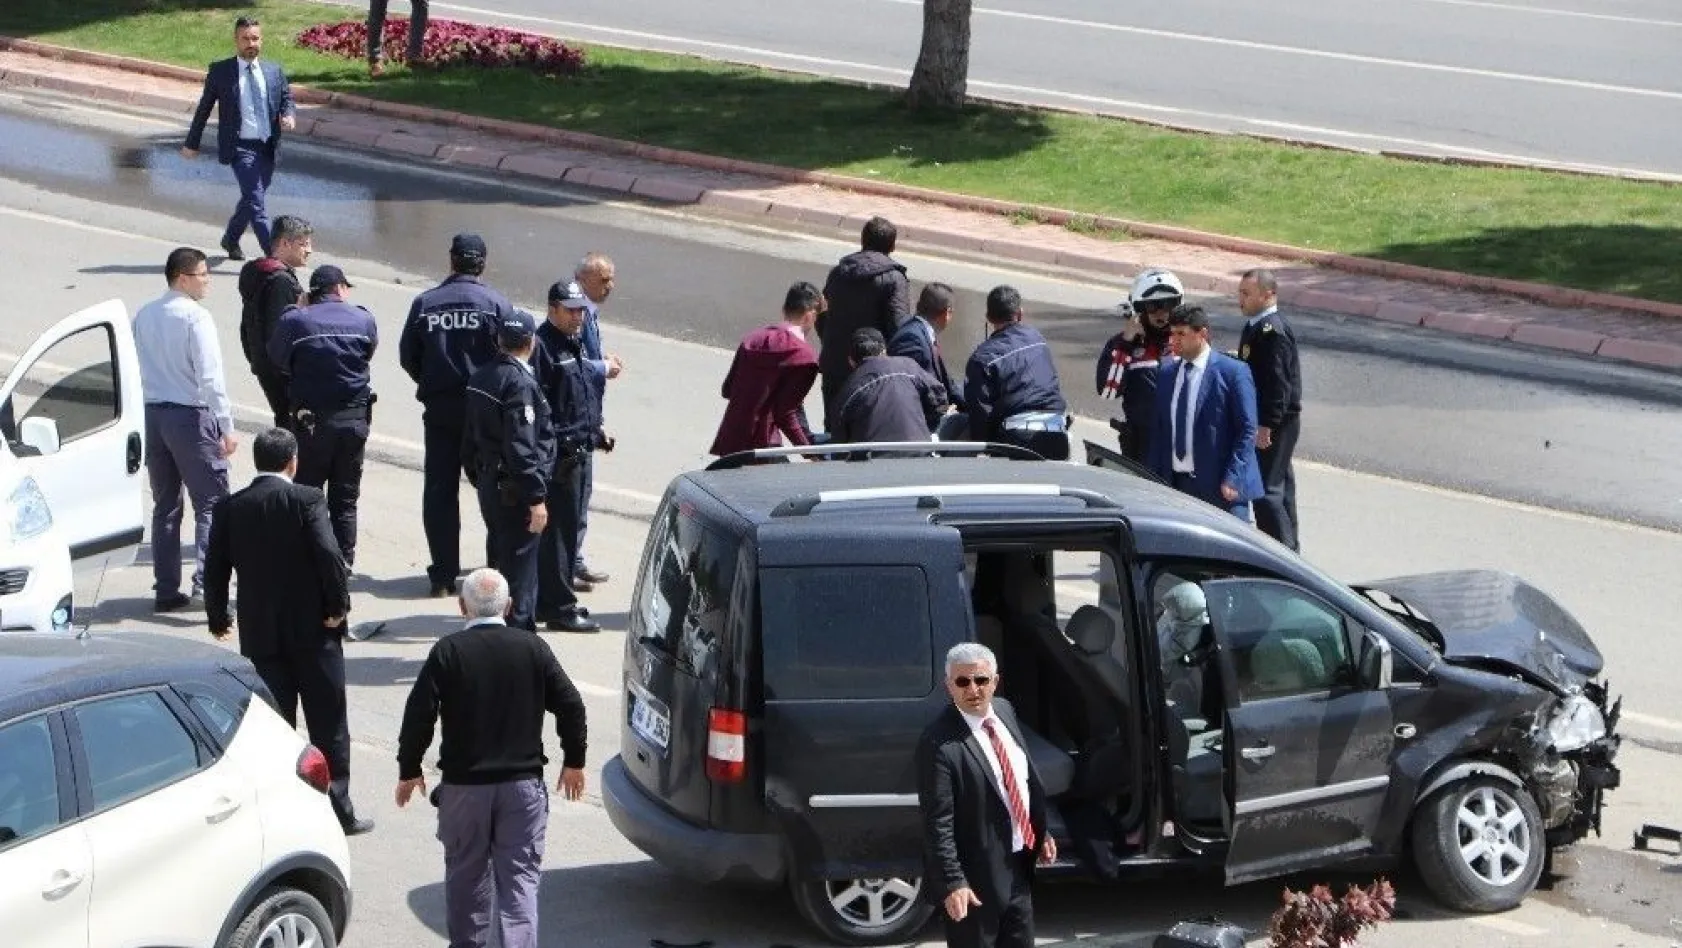 Kontrolden çıkan otomobil, Kılıçdaroğlu'nu takip eden gazetecilerin aracına çarptı: 3 yaralı
